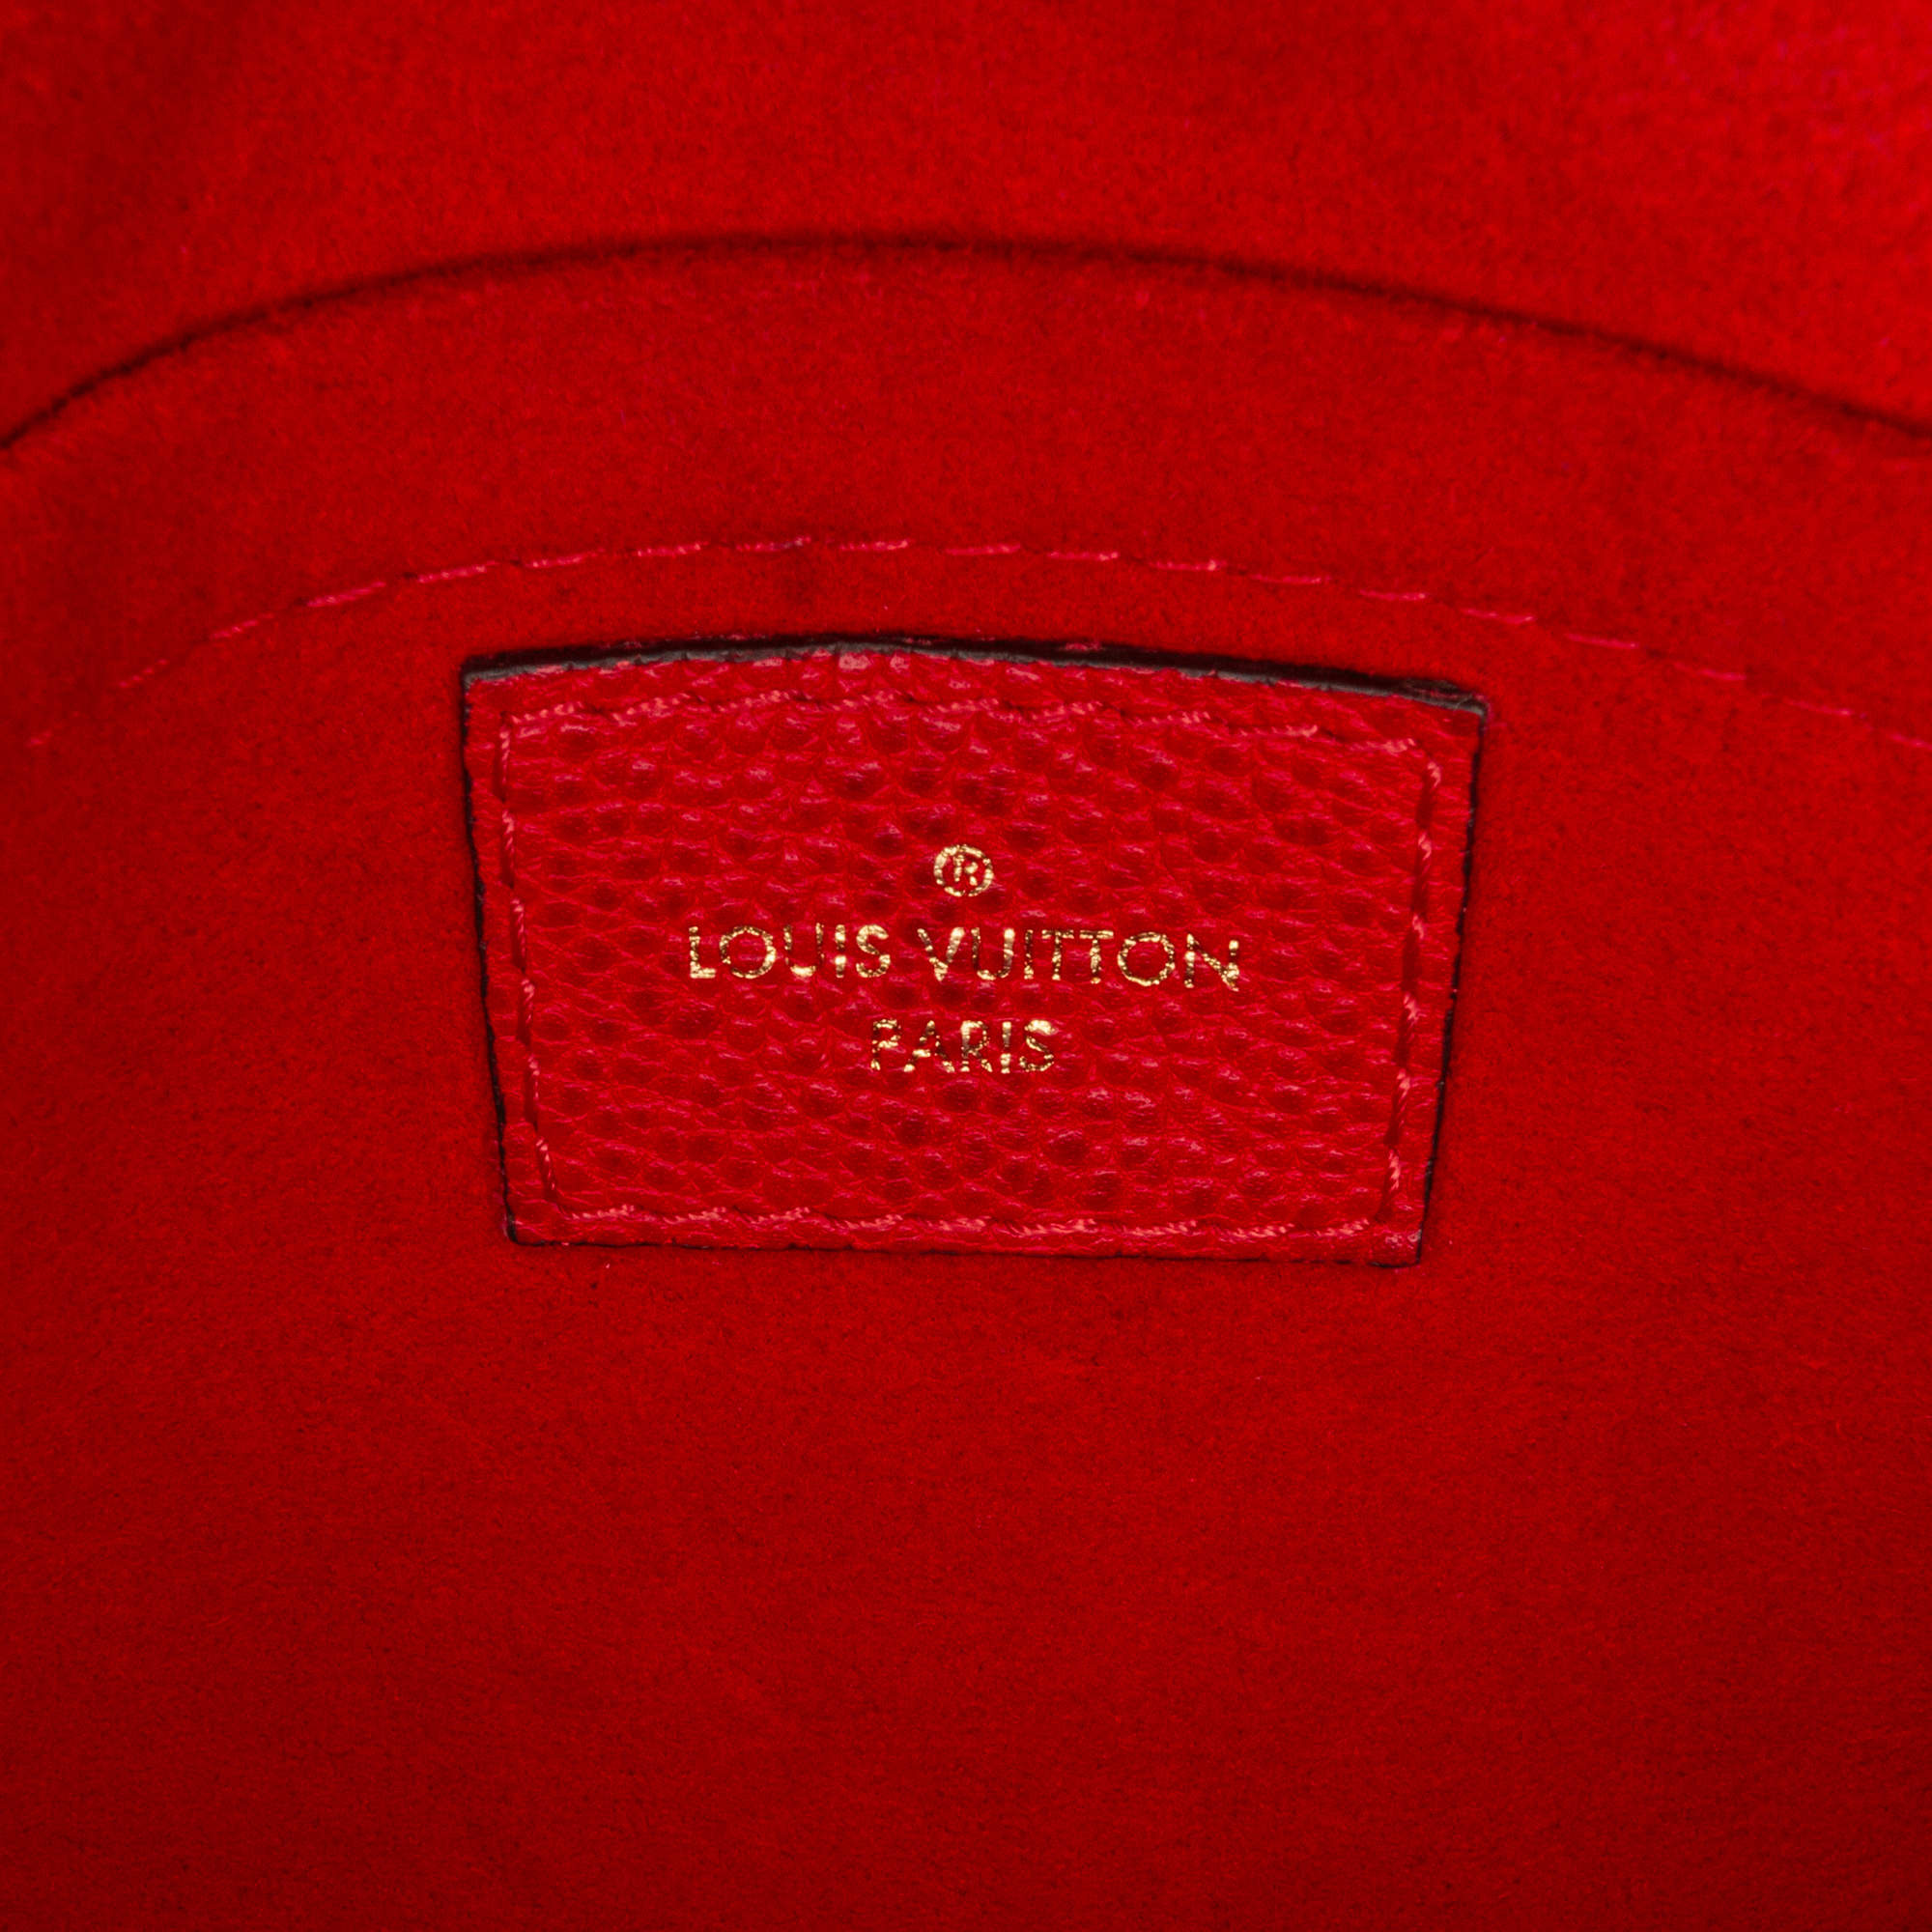 Louis Vuitton Monogram Empreinte Vavin BB (SHG-36356) – LuxeDH